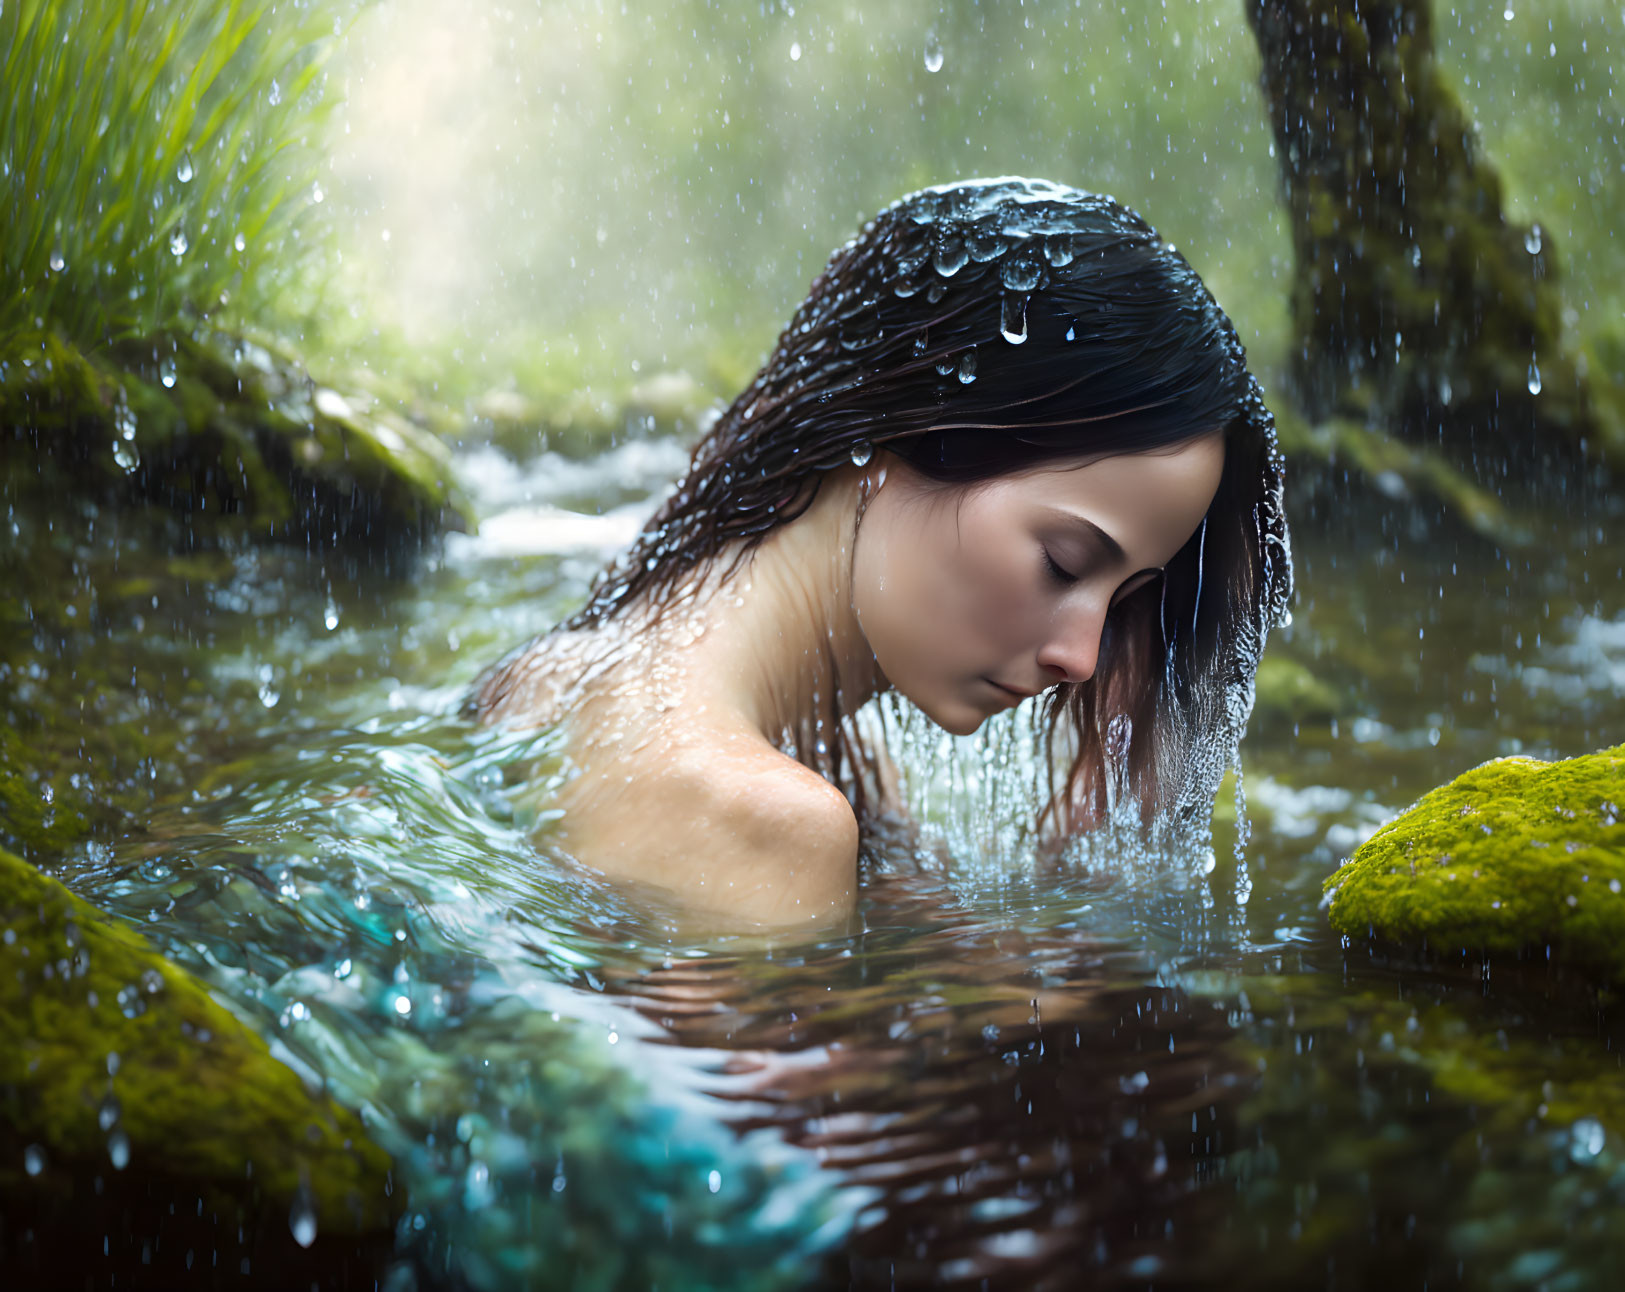 Woman bathing in rain